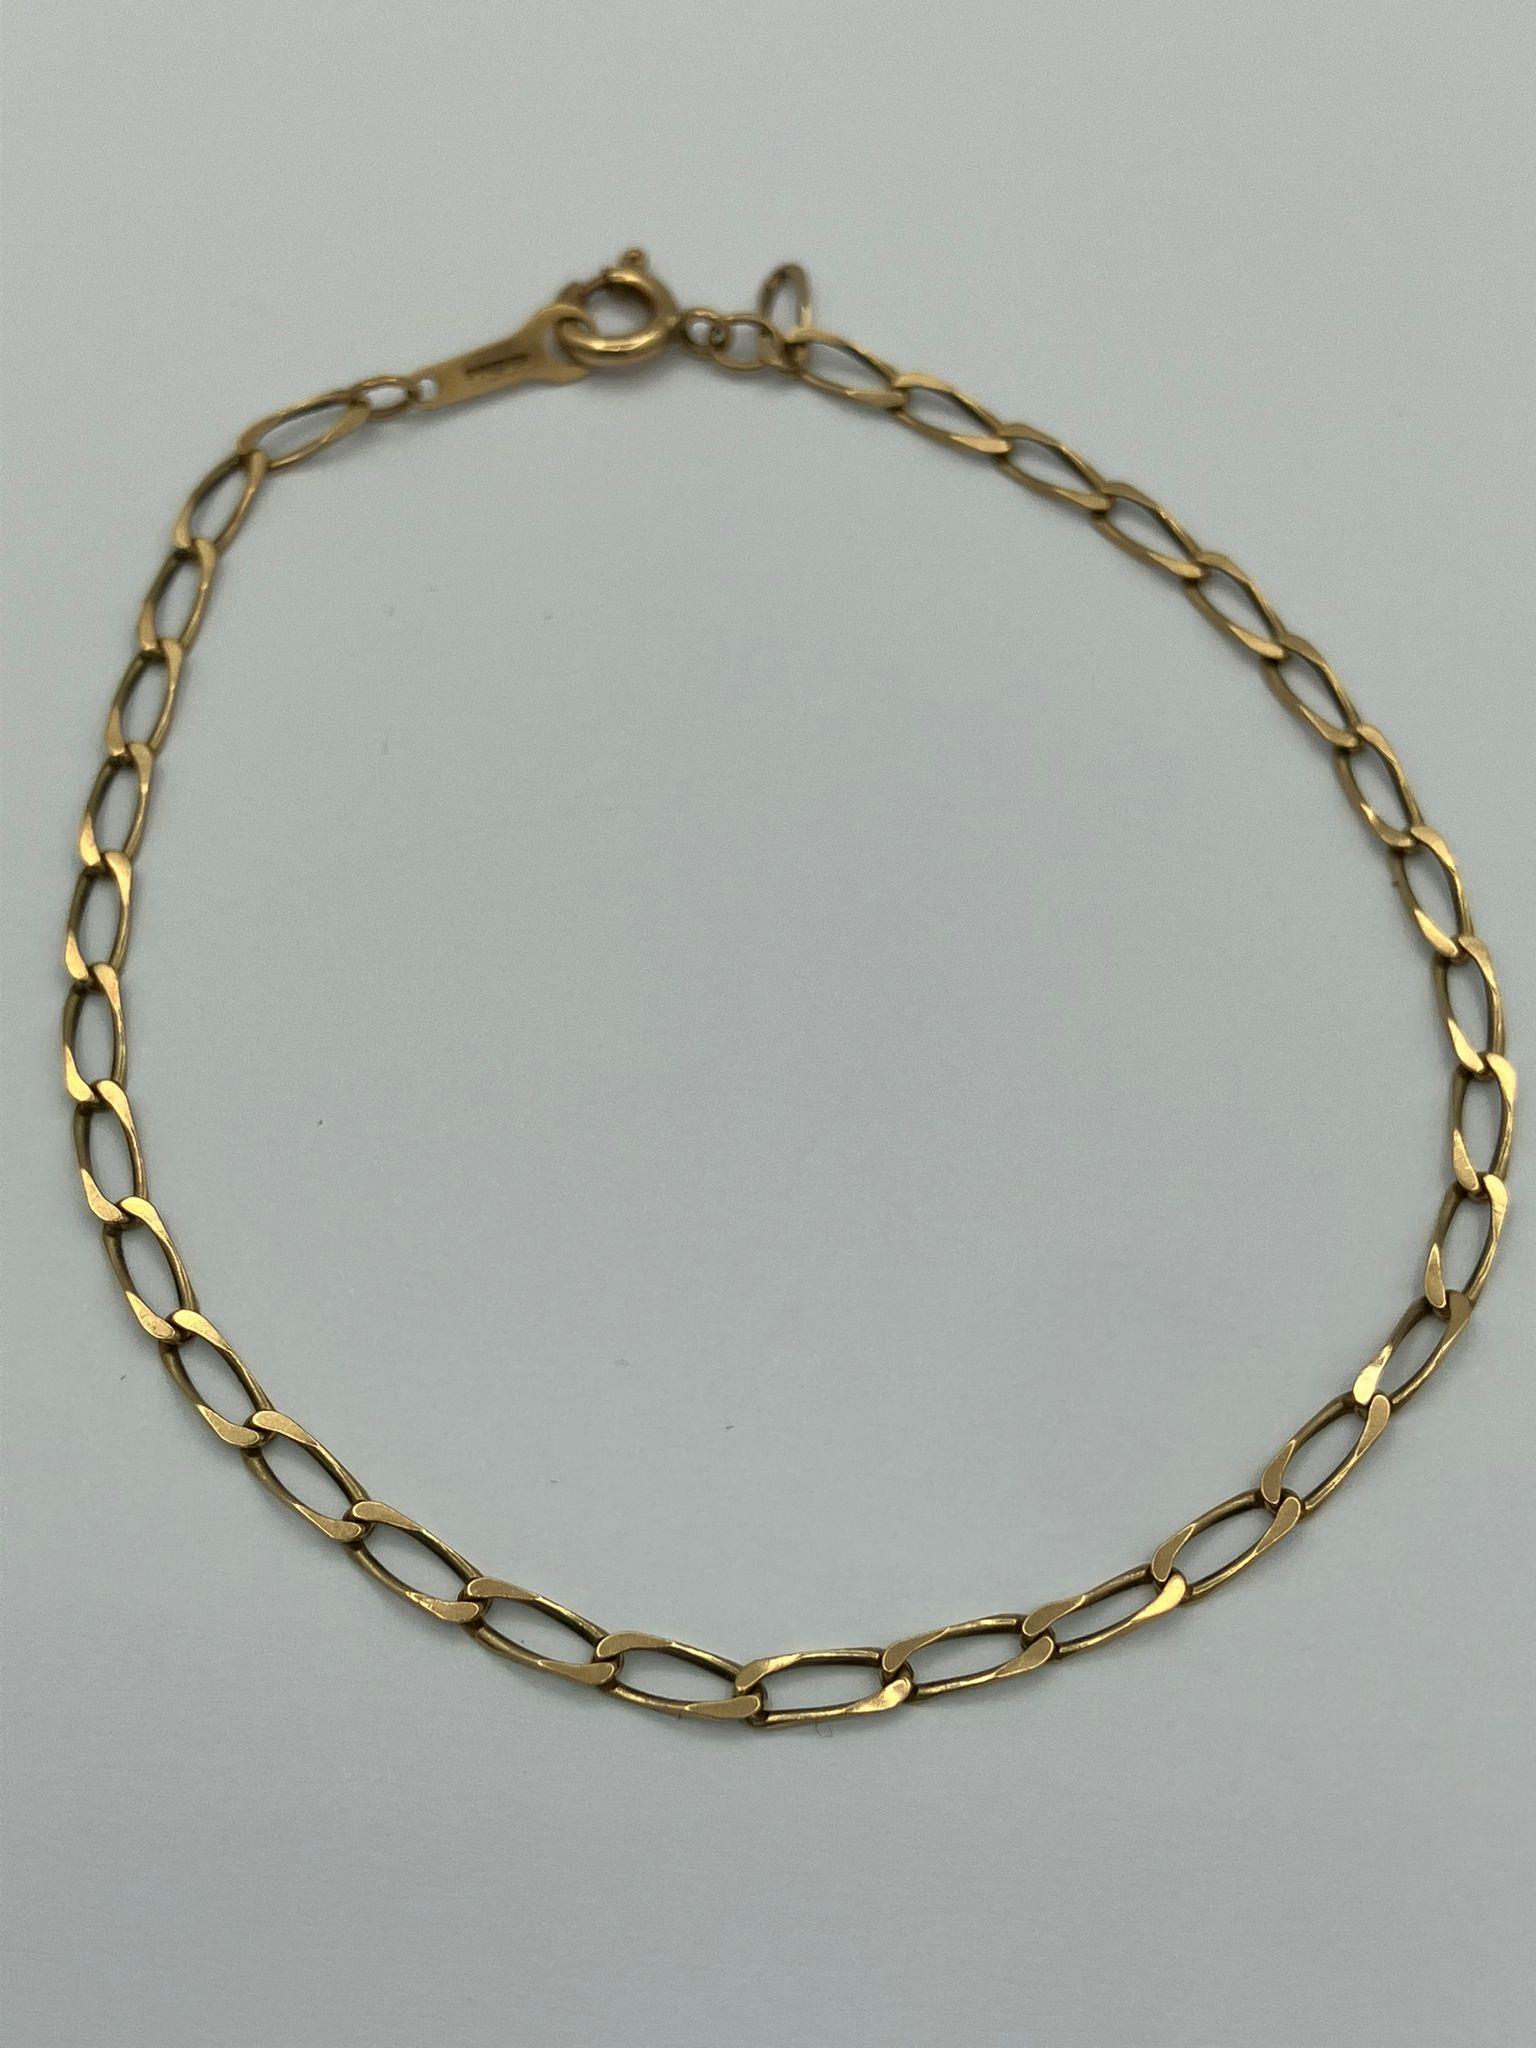 9 carat GOLD CHAIN LINK BRACELET. Full UK Hallmark. 1.4 grams. 18 cm.